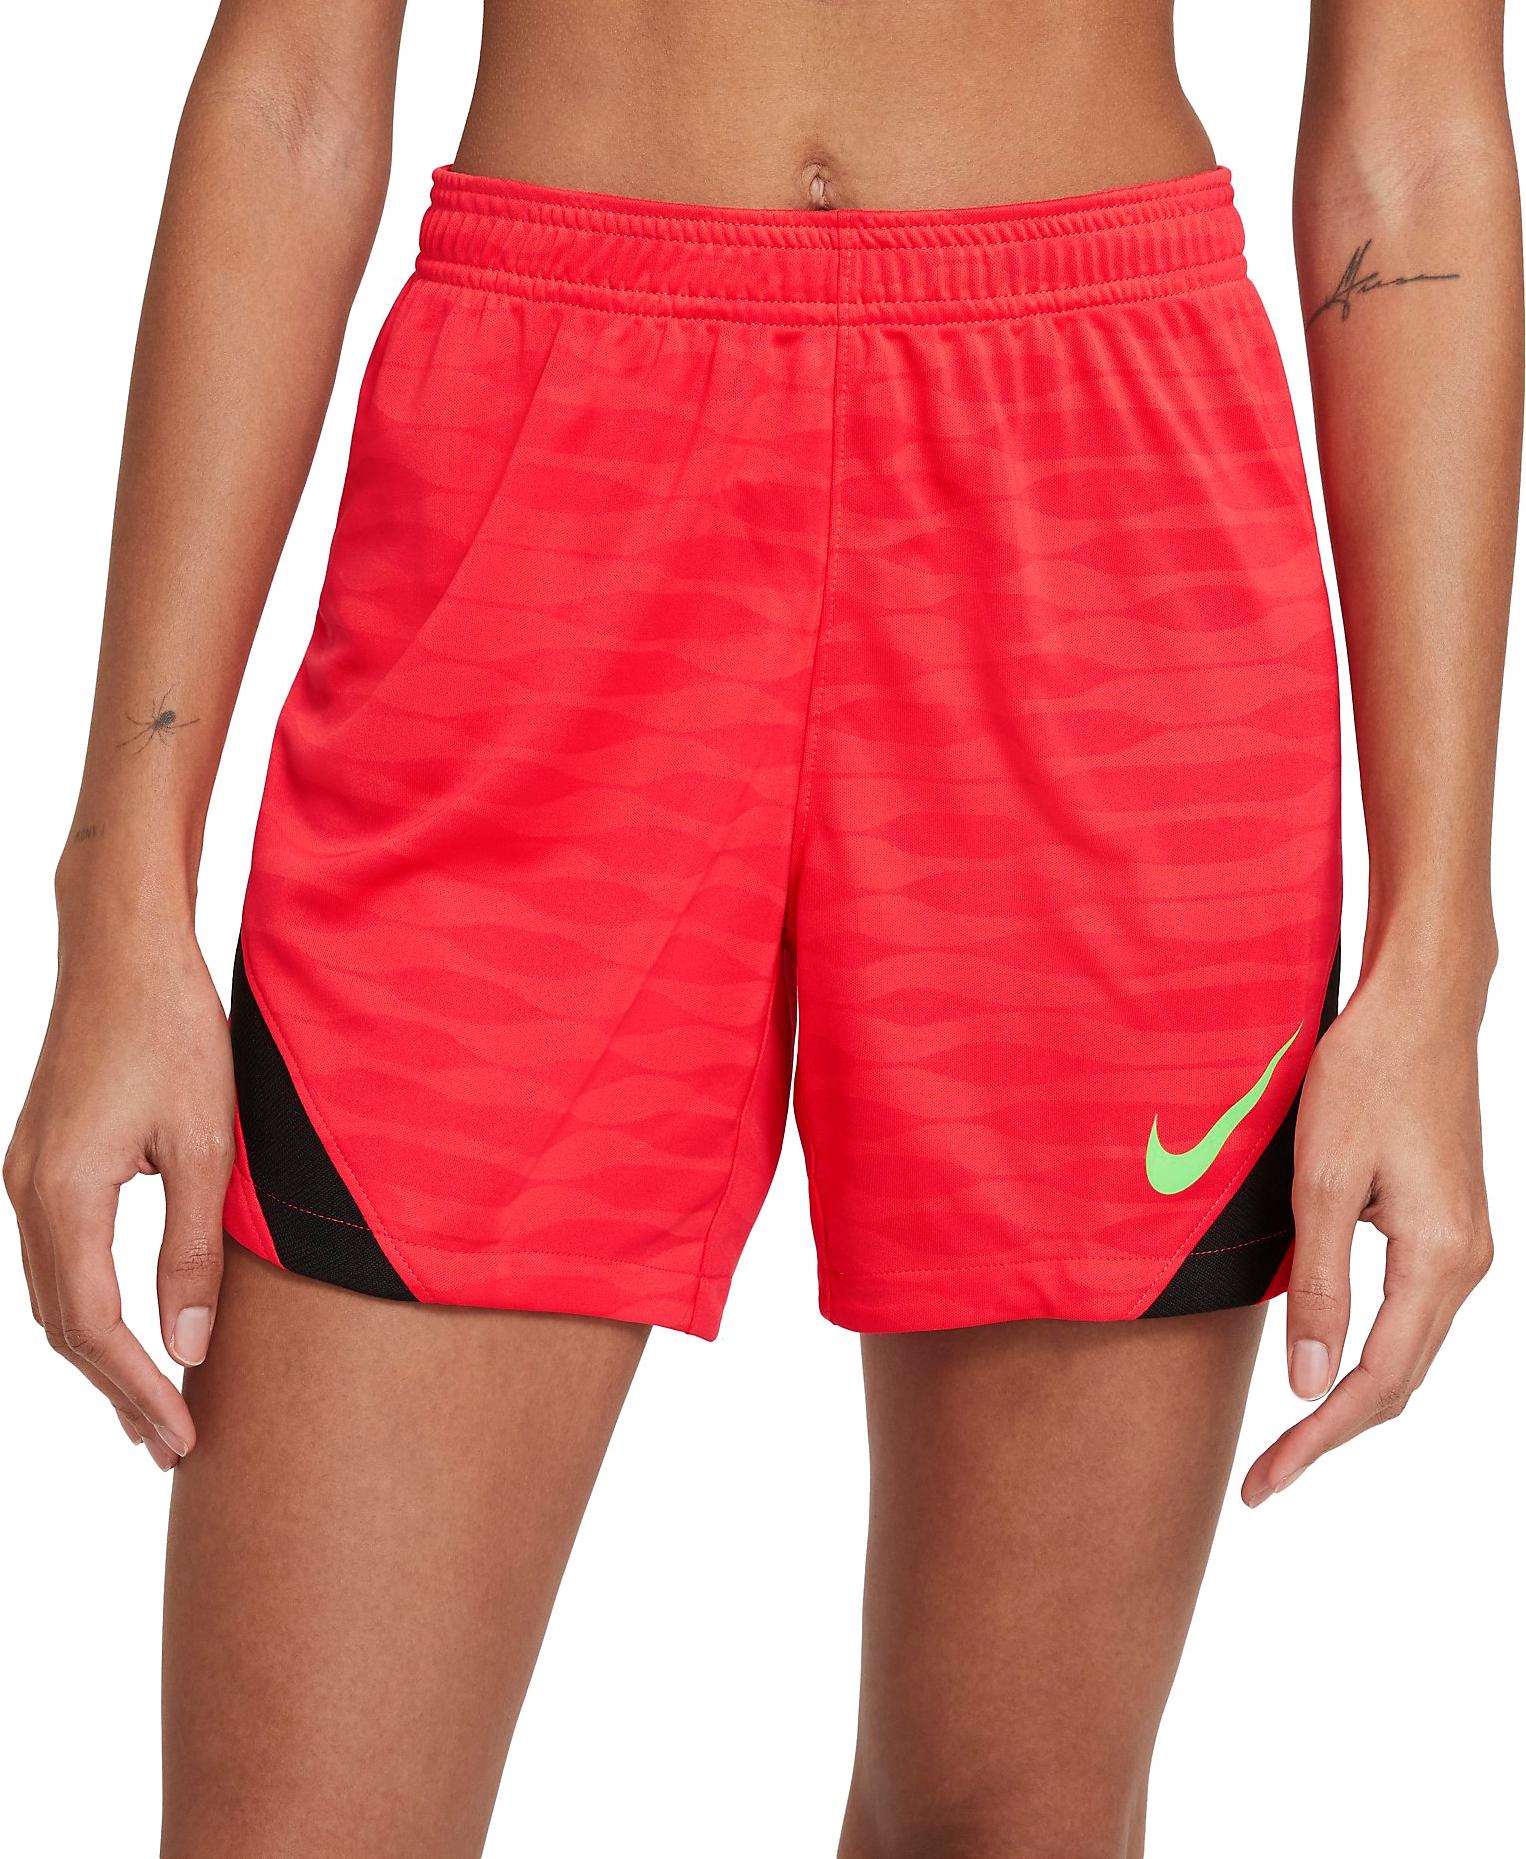 Pantalón corto Nike Dri-FIT Strike